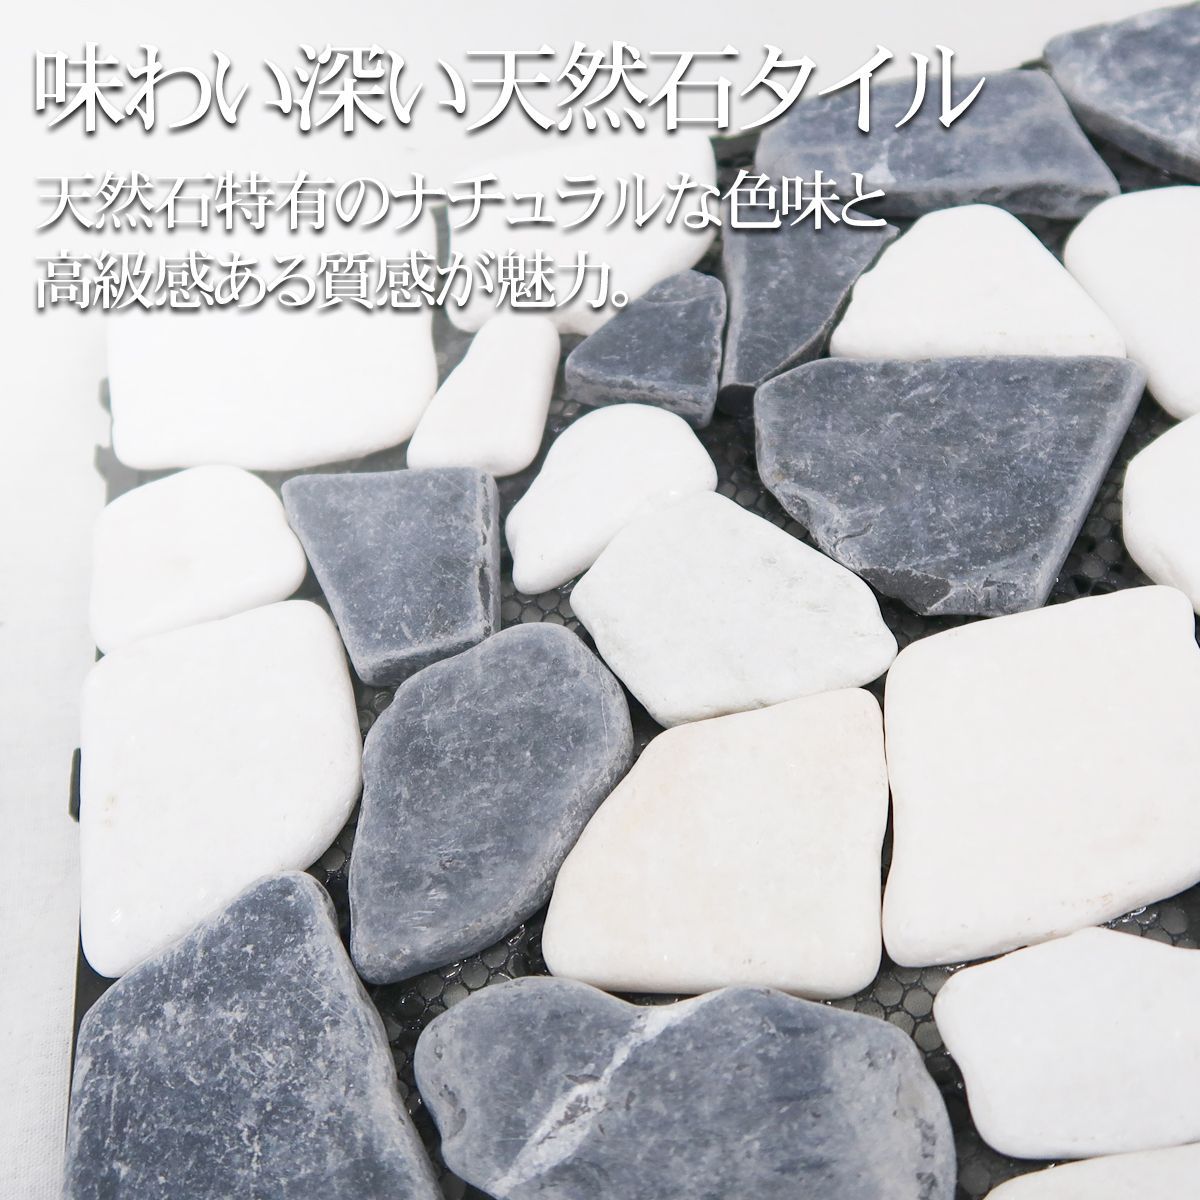 タイルマット ジョイントタイル 天然石 DIY 石畳 タイル 12枚セット